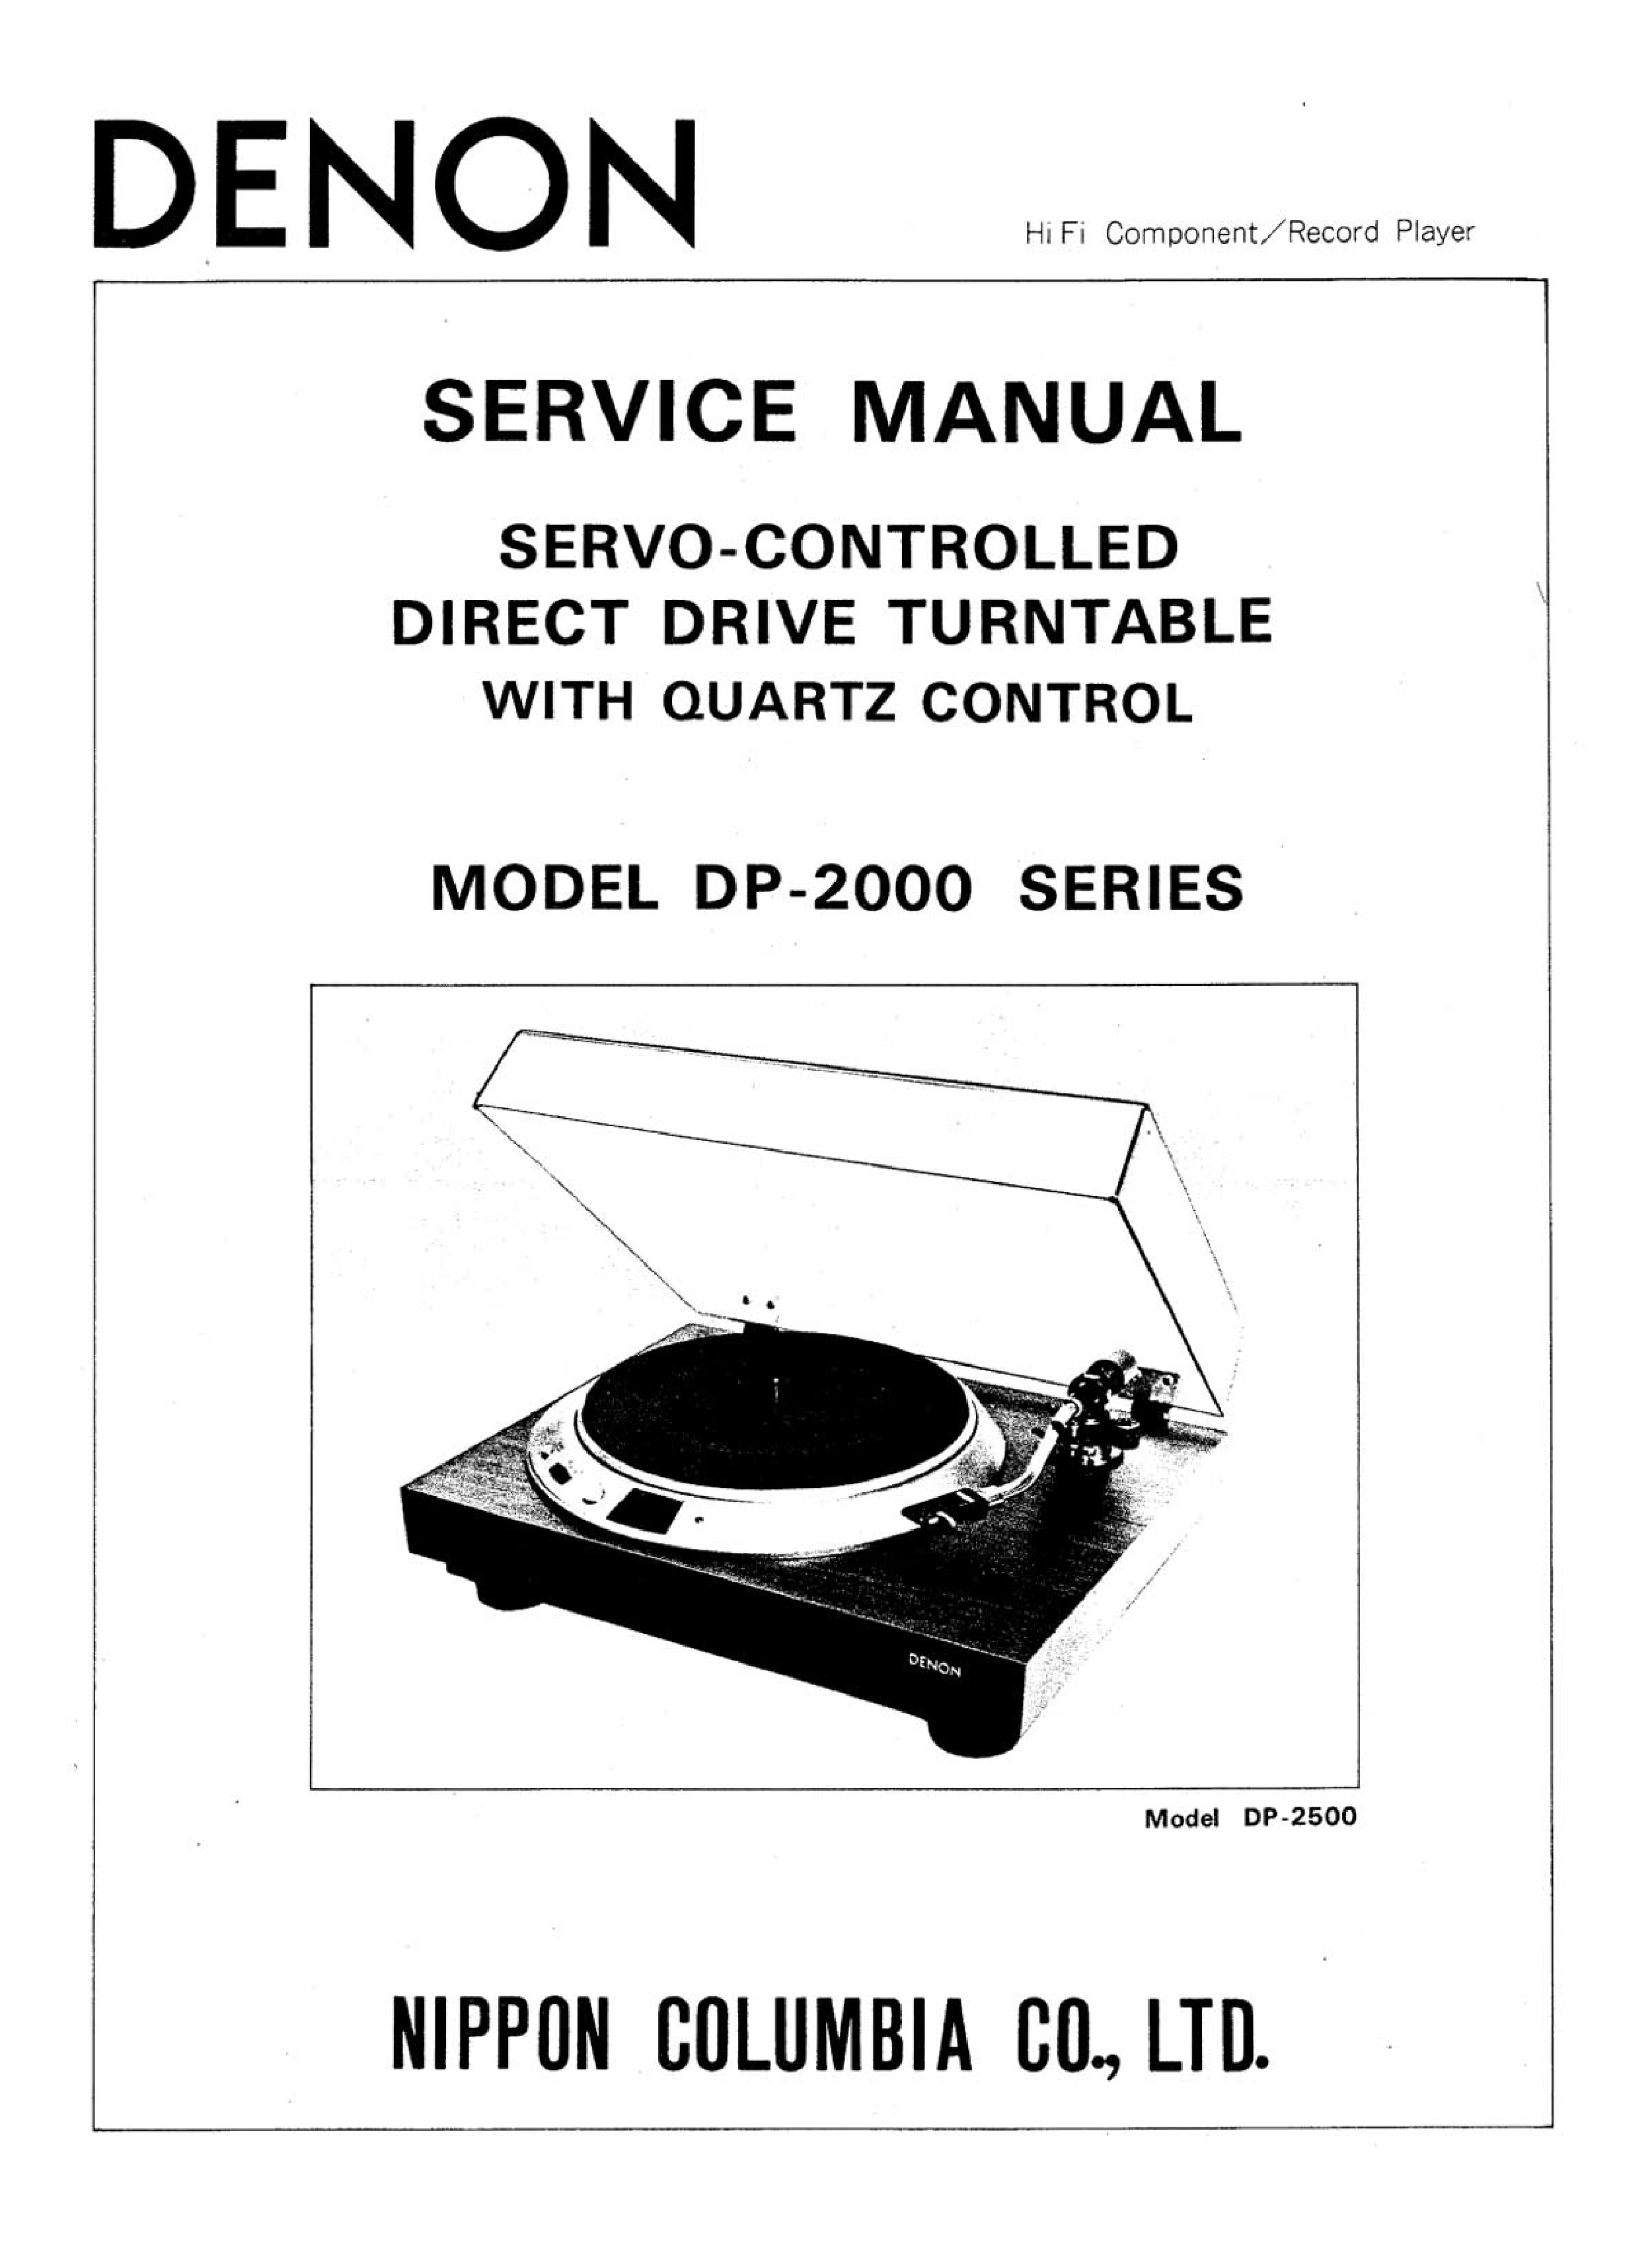 Denon DP-2000 Service Manual